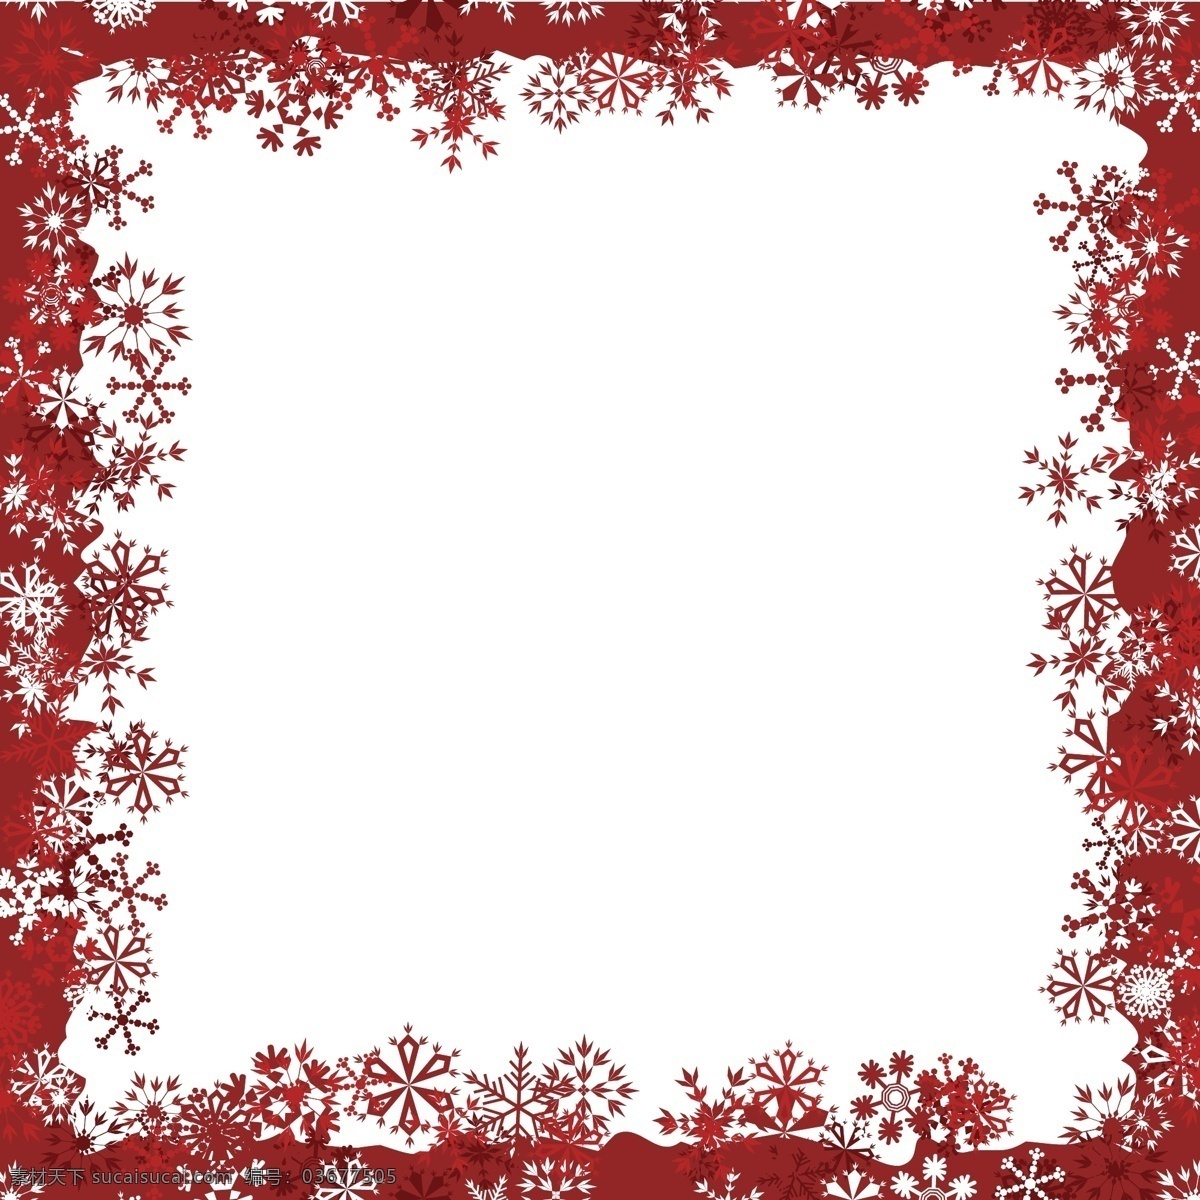 冬天边框素材 冬天边框 红色边框 边框